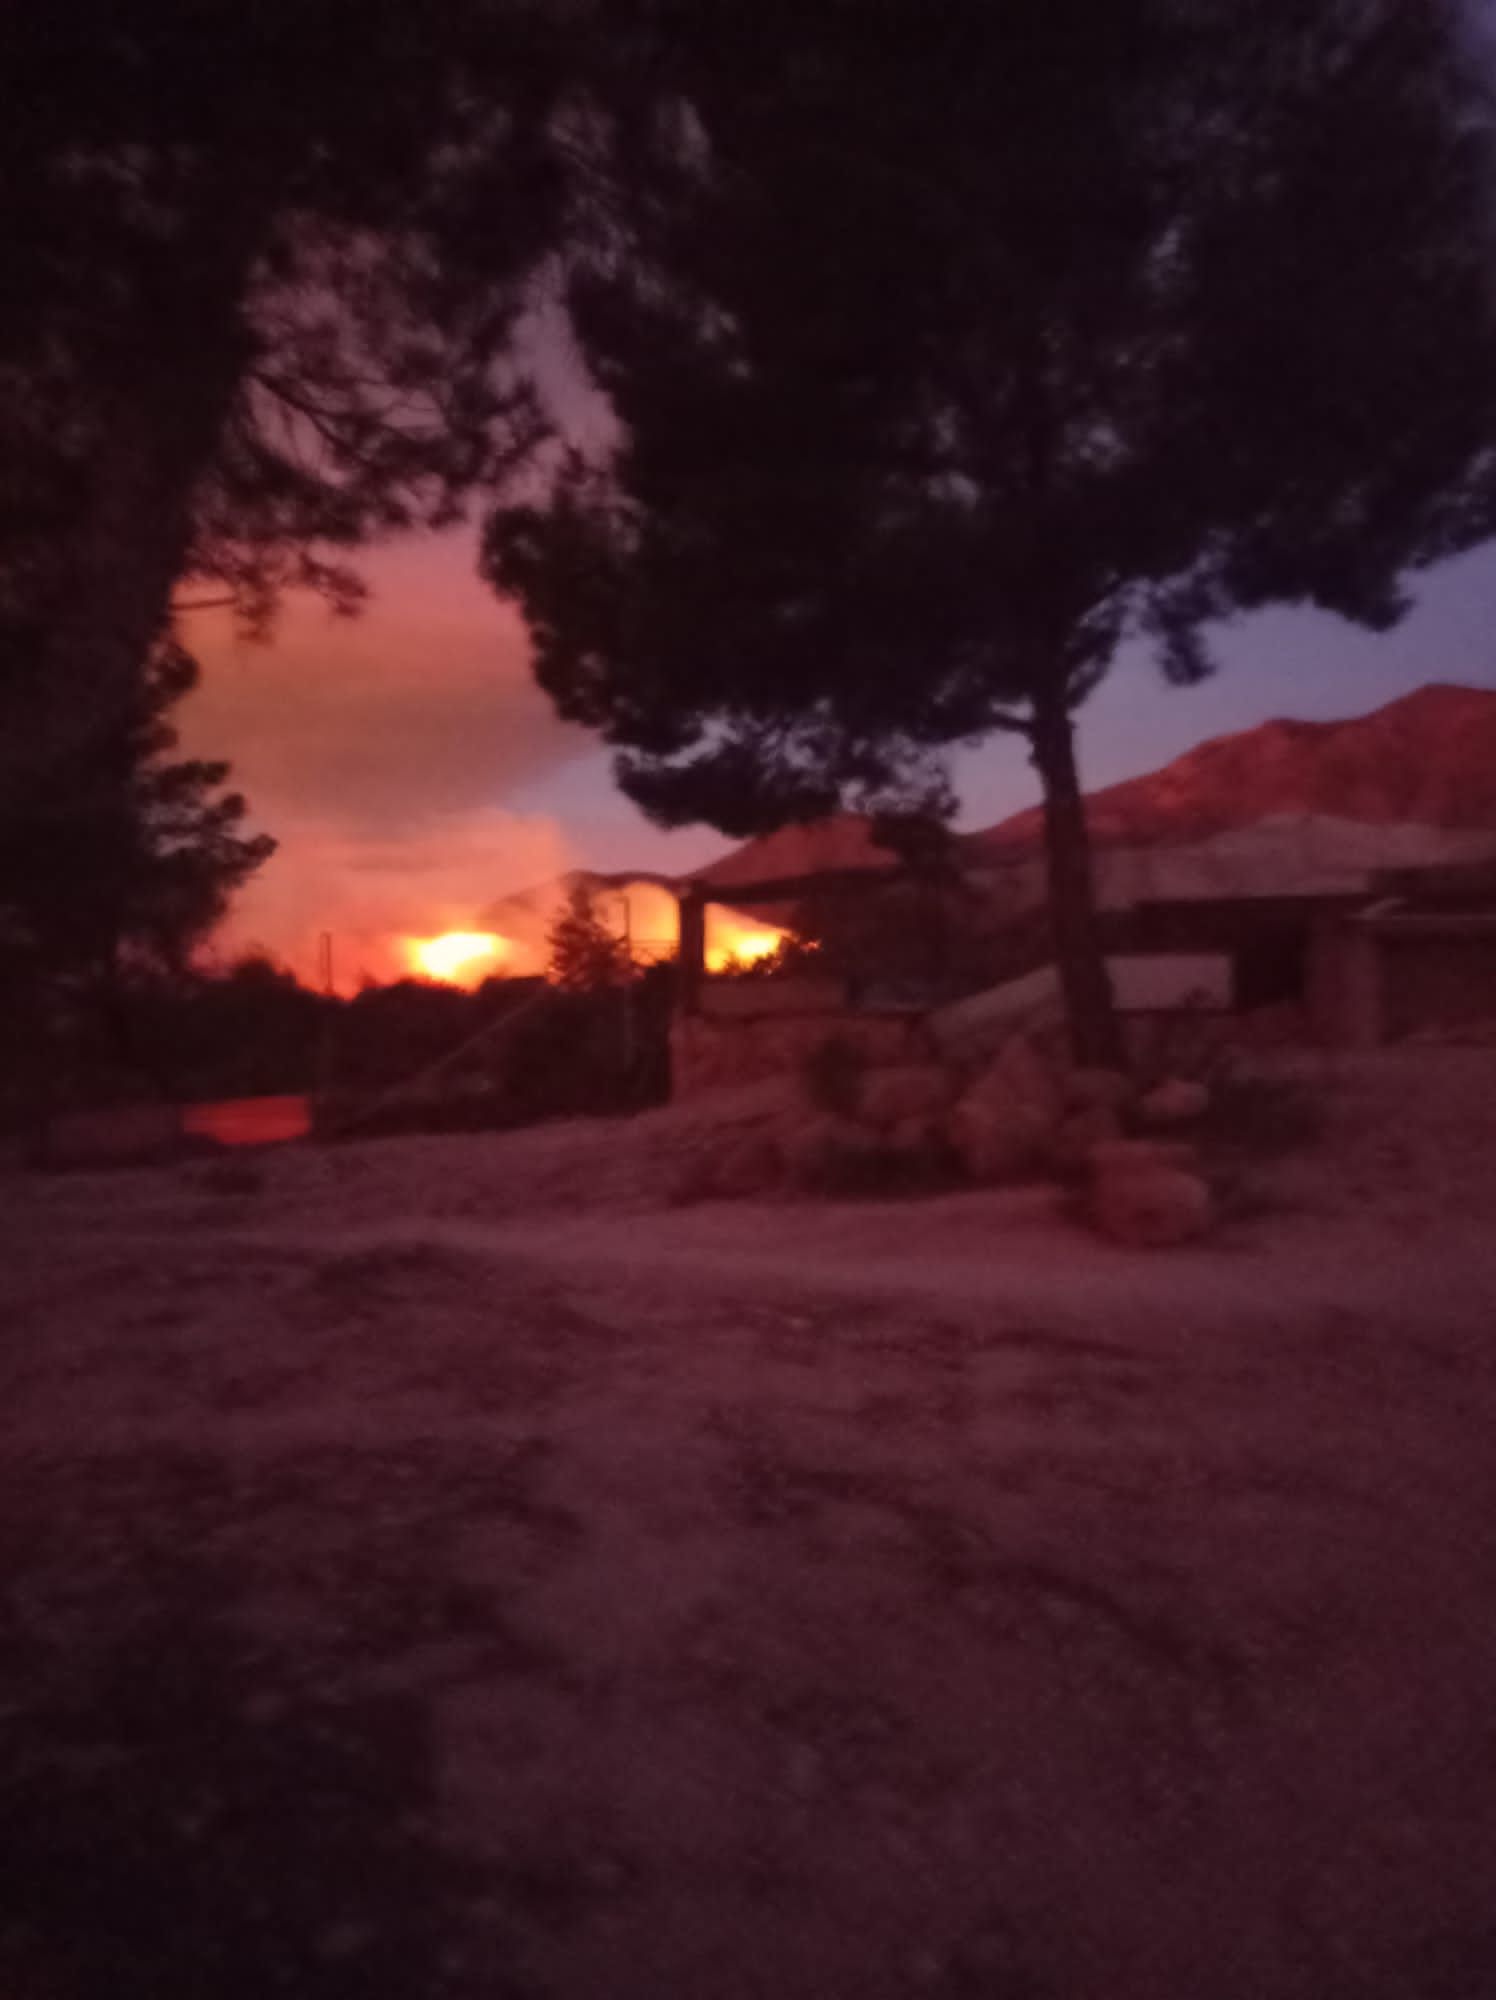 Fuerte incendio forestal en Aigües en una zona llena de chalés y cercana al casco urbano